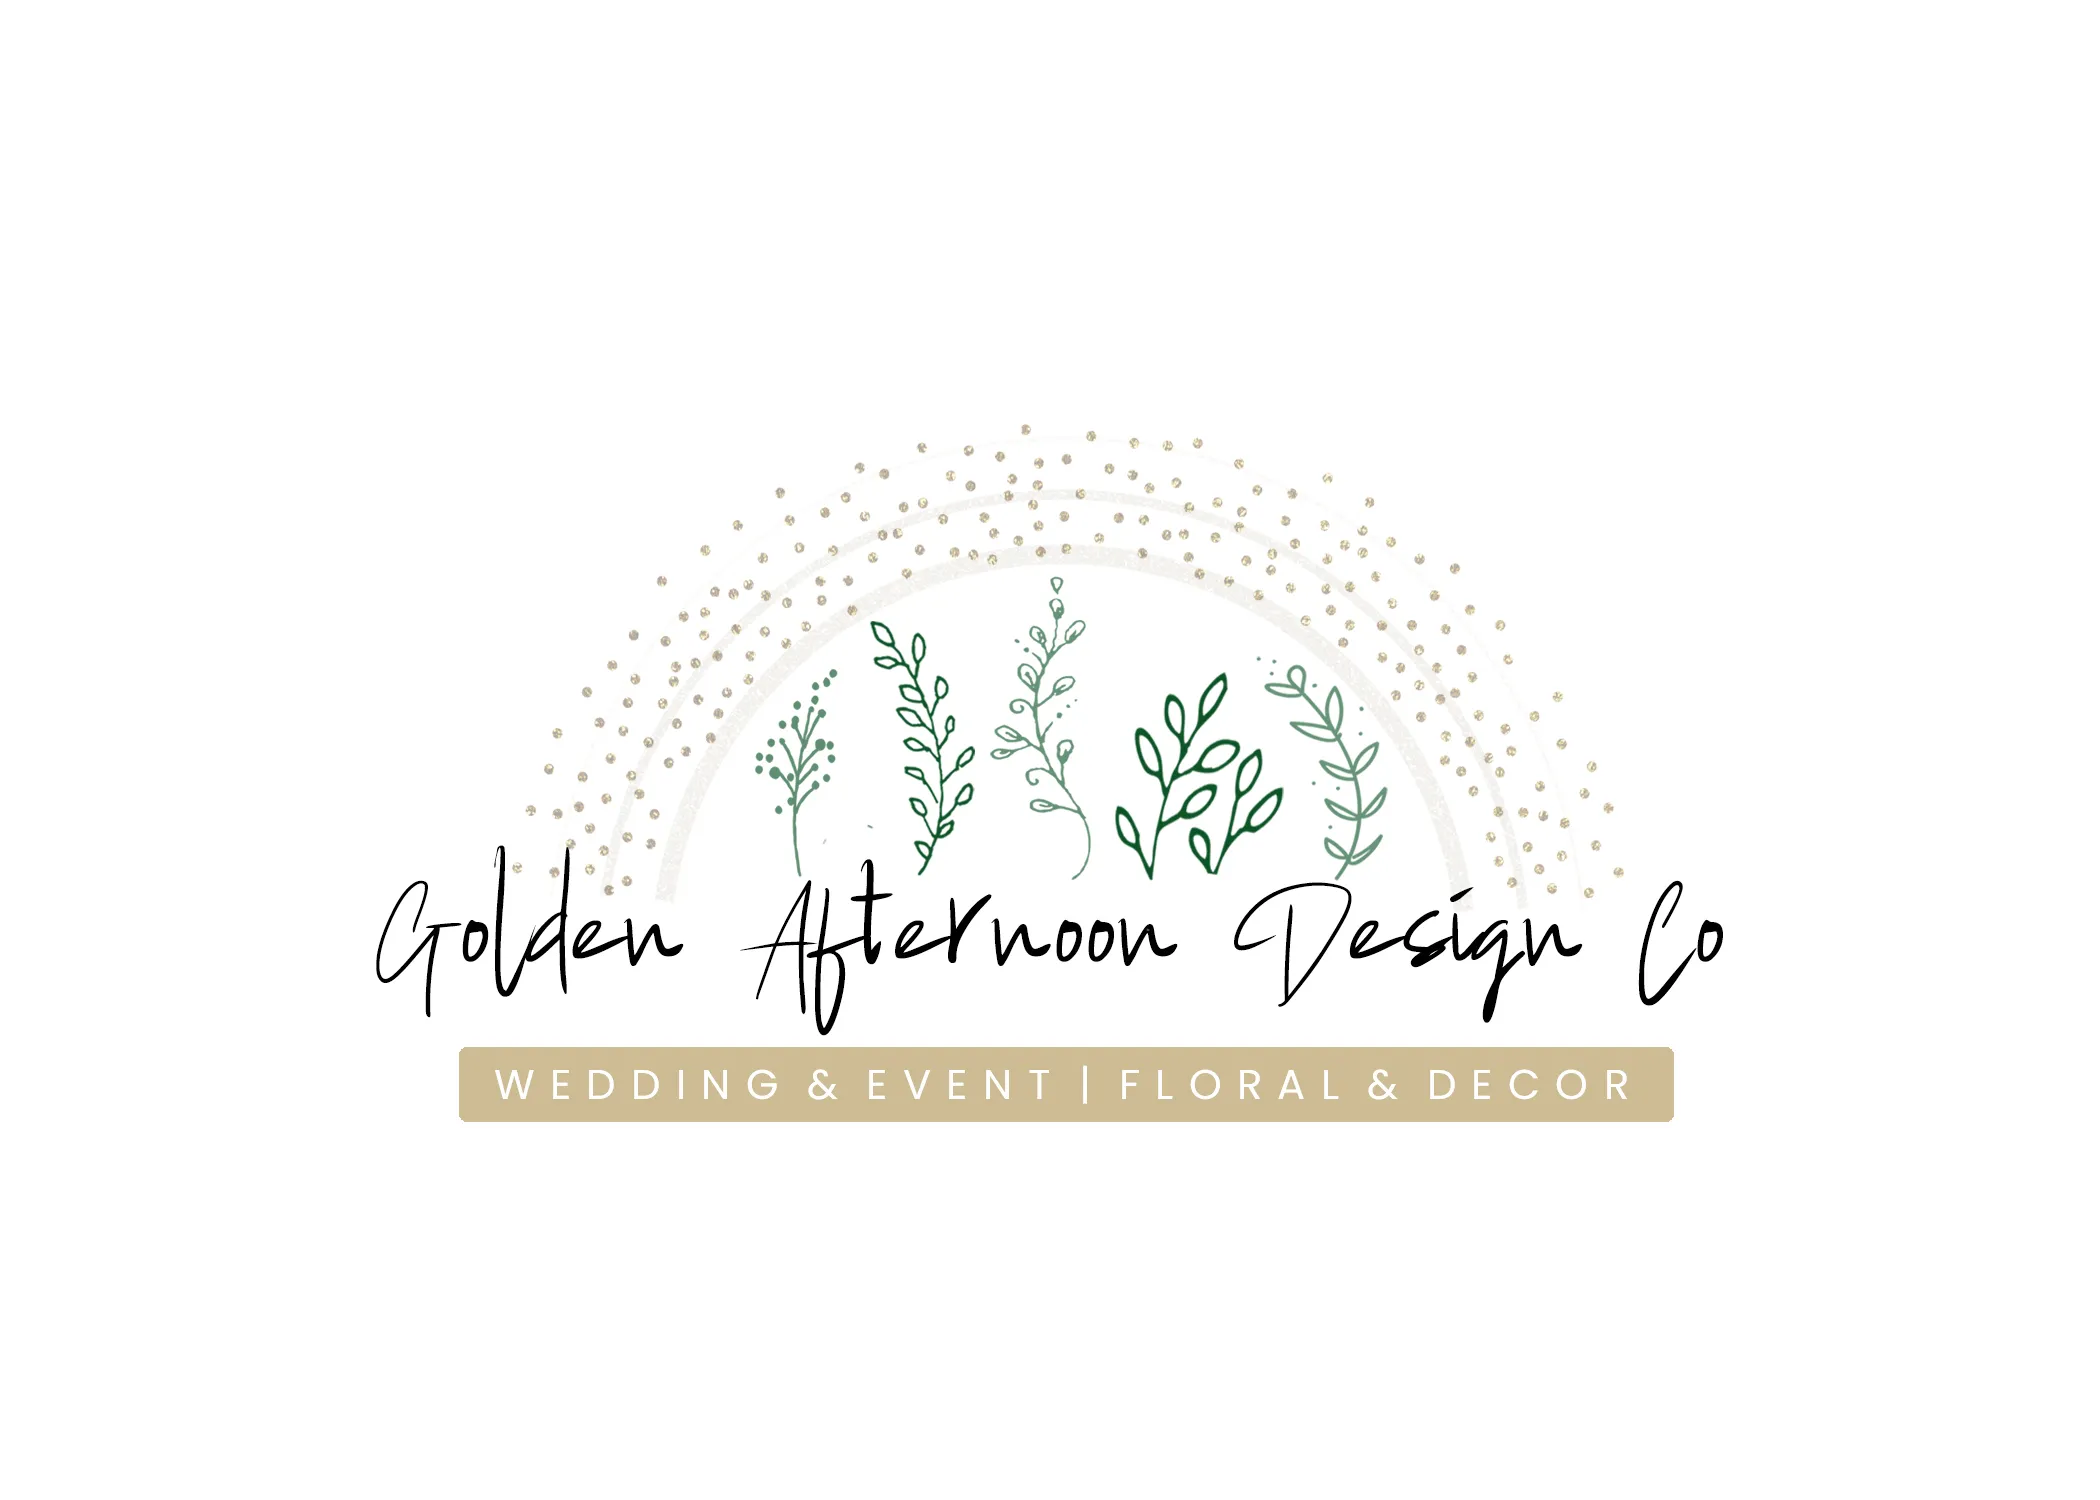 Golden Afternoon Design Co